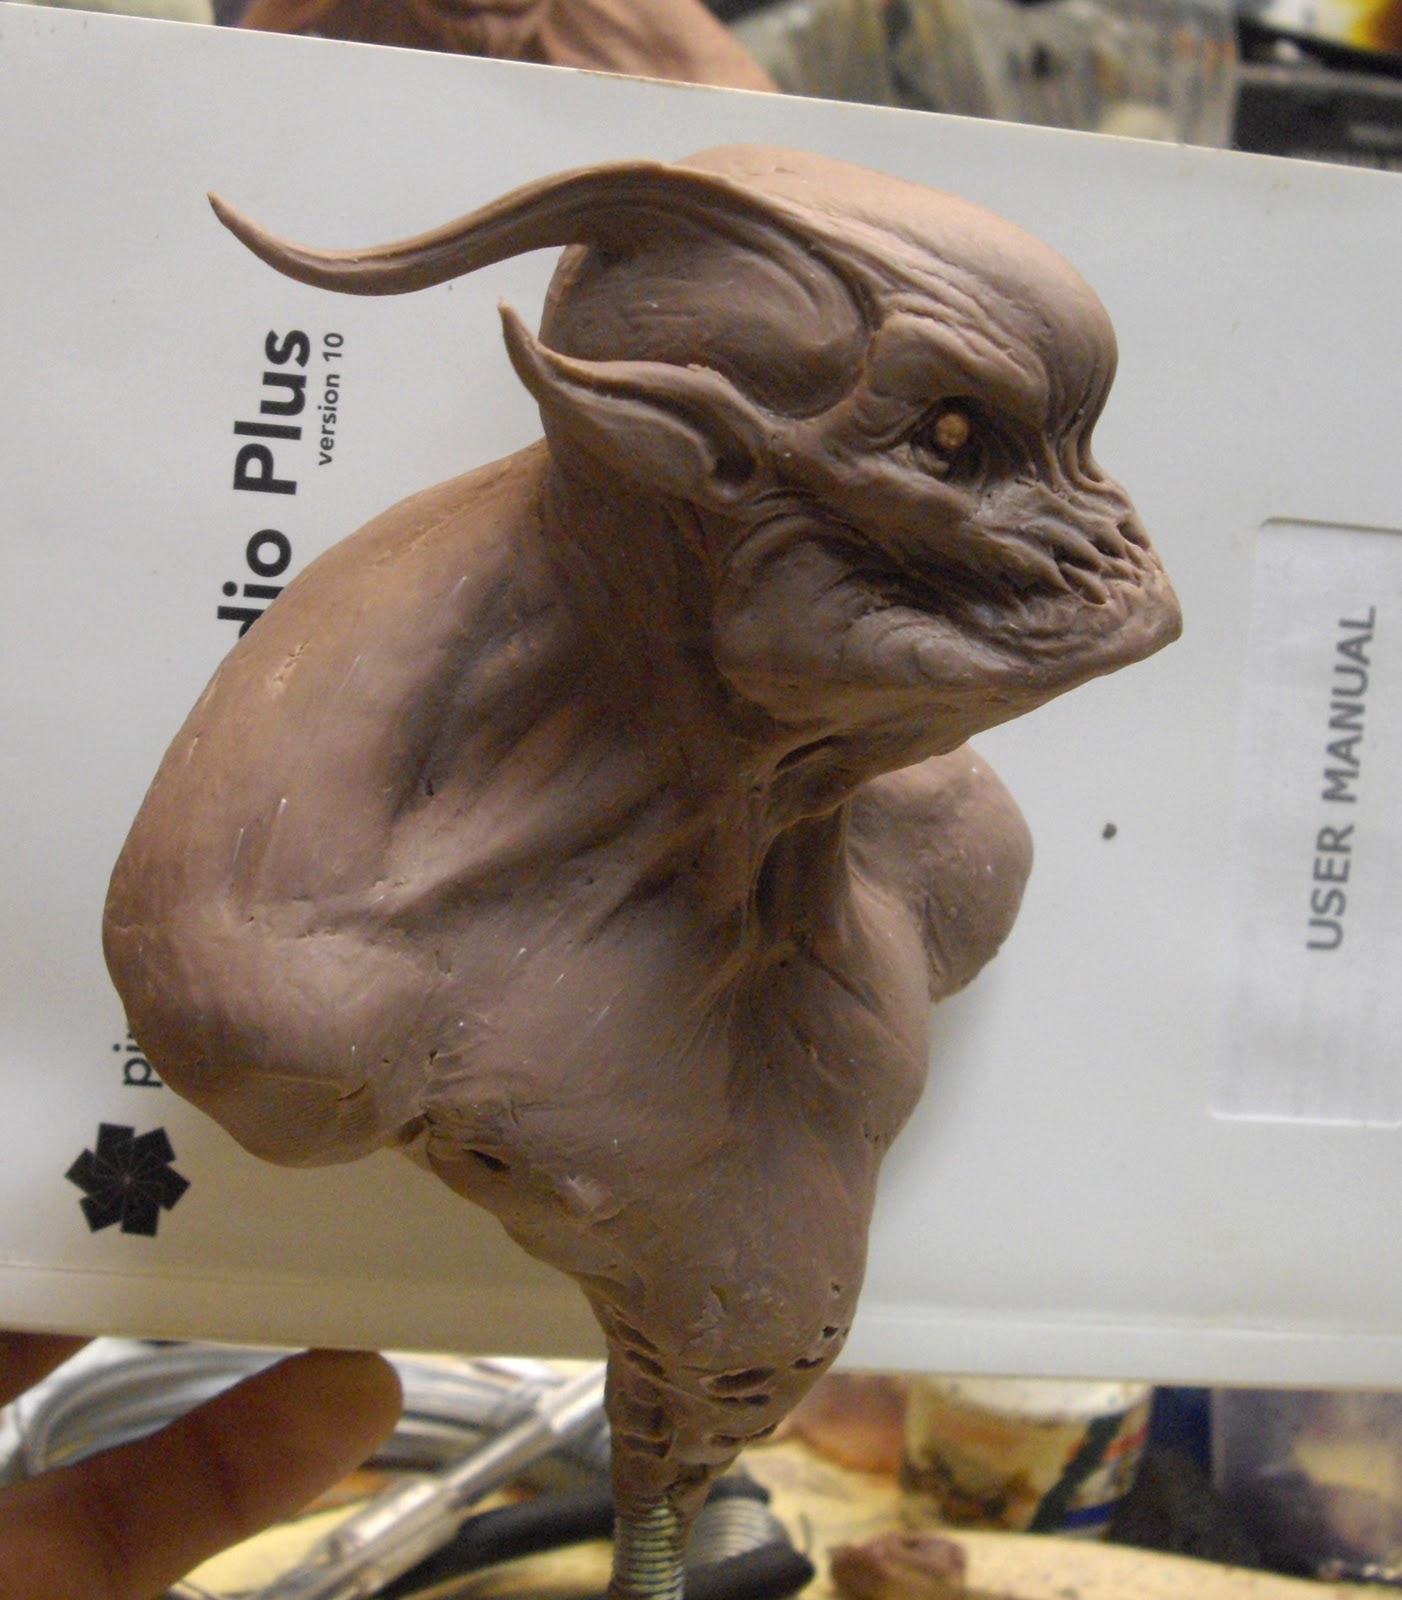 Aris Kolokontes art.: Monster clay monster. WIP.